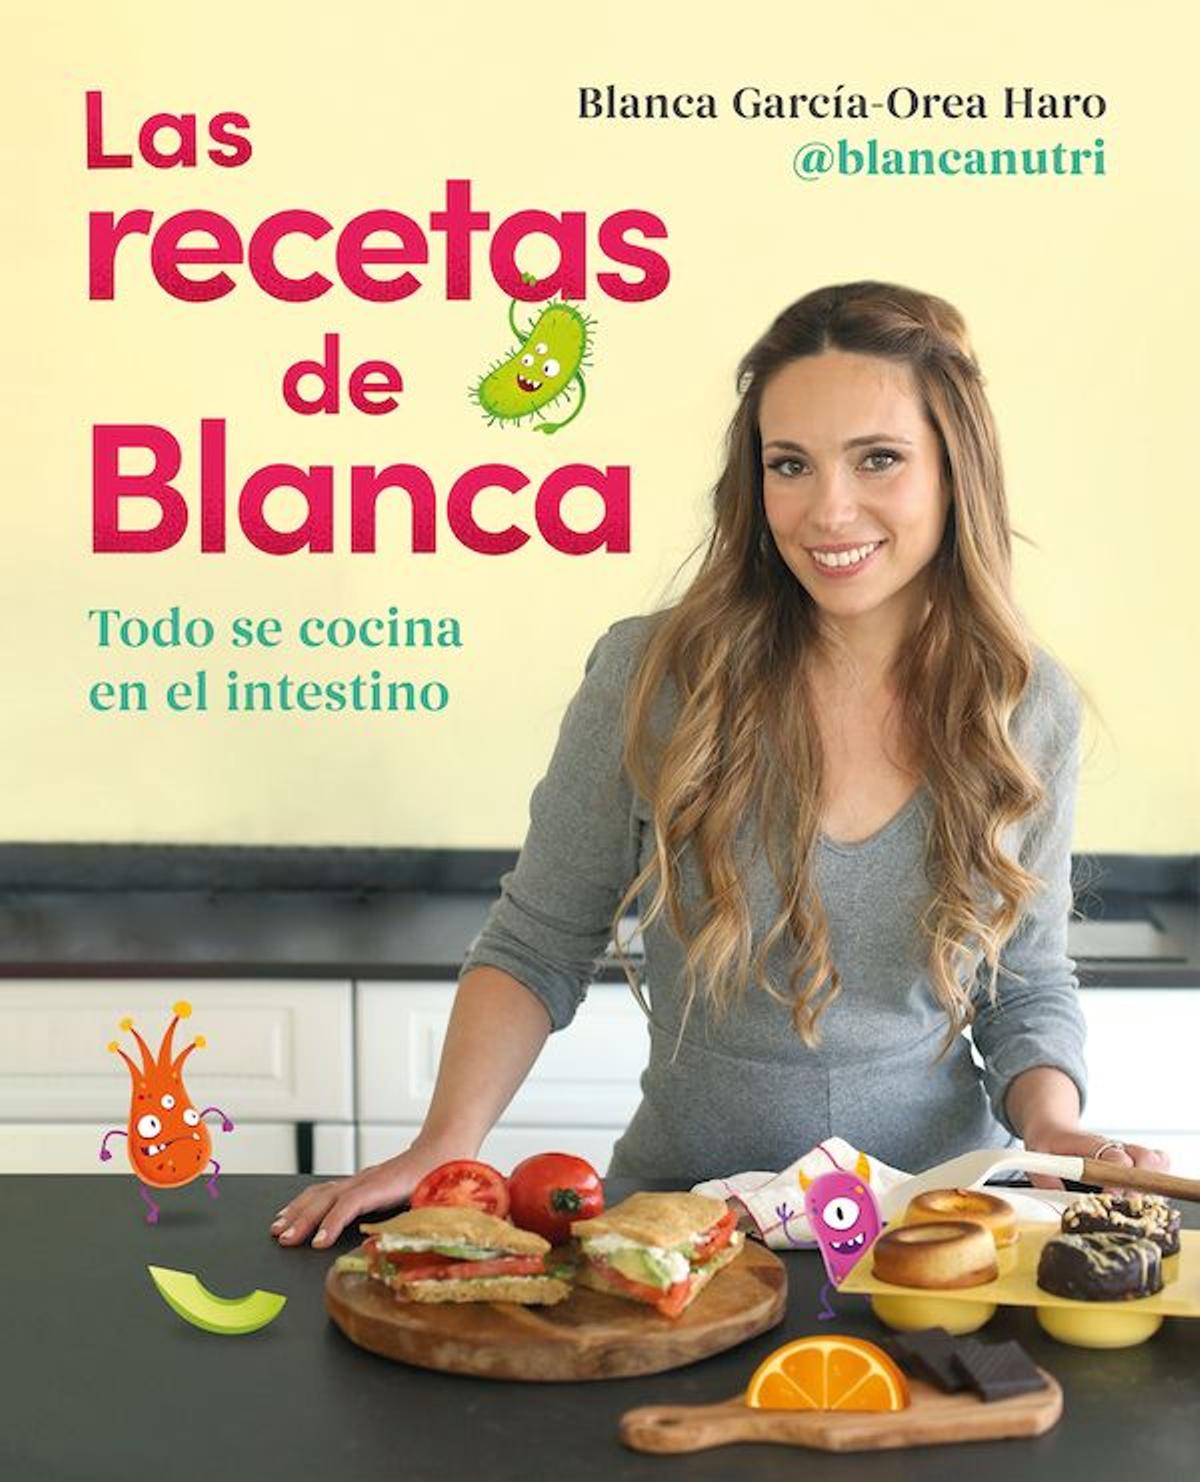 Las recetas de Blanca, de Blanca García-Orea Haro